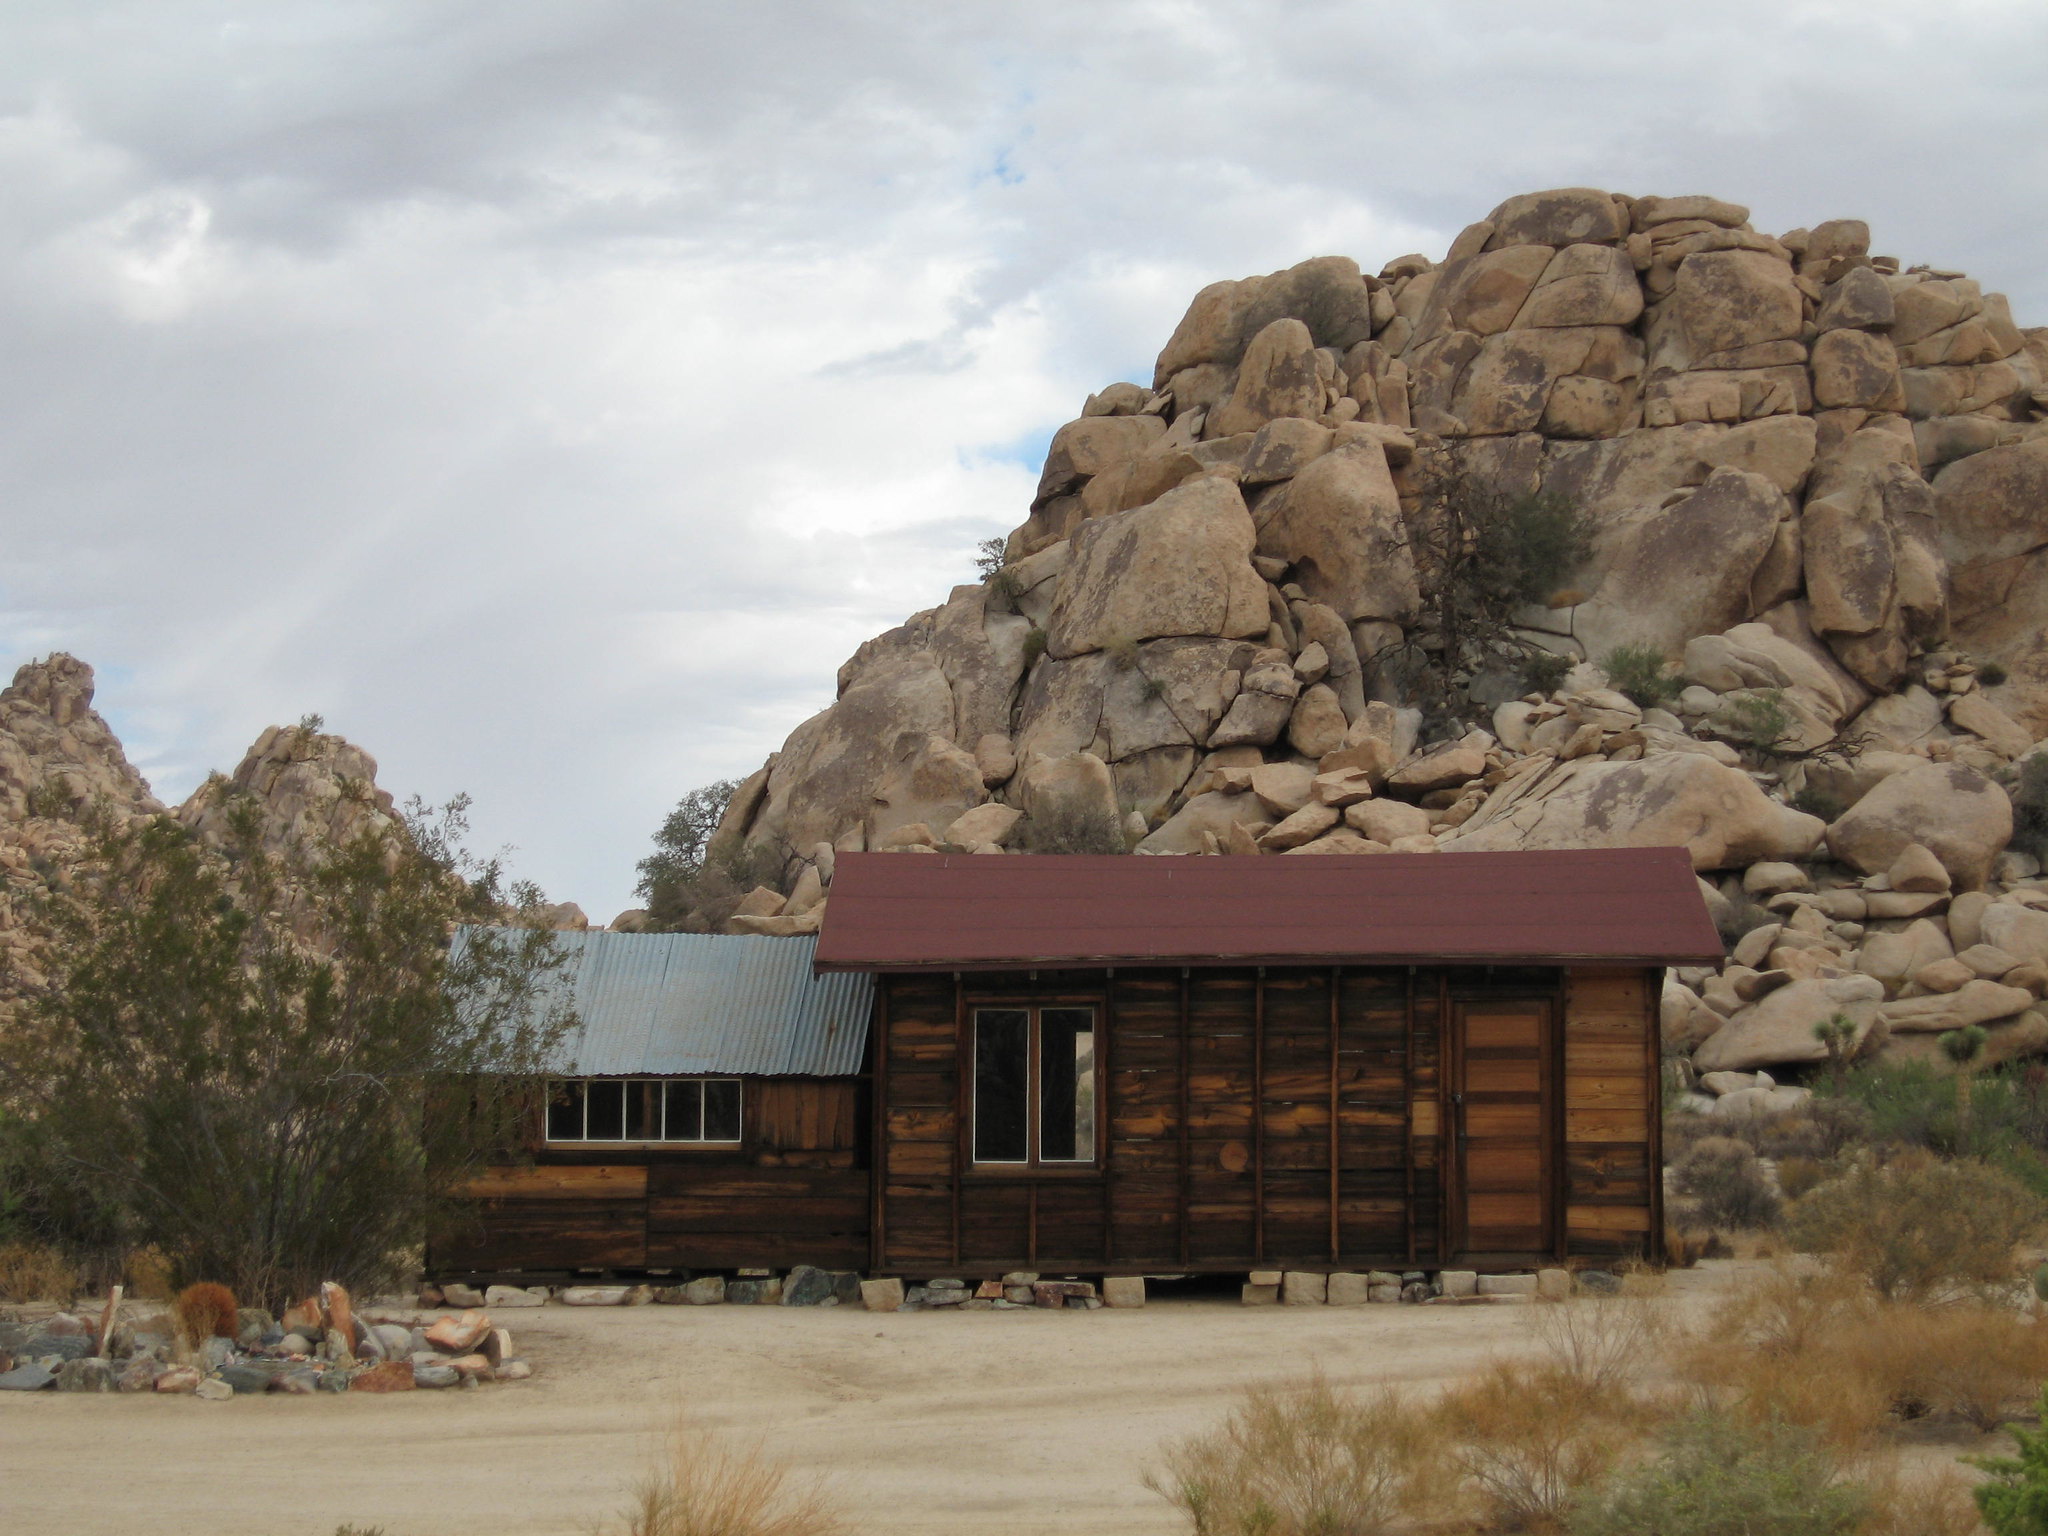 Desert Queen Ranch Schoolhouse today